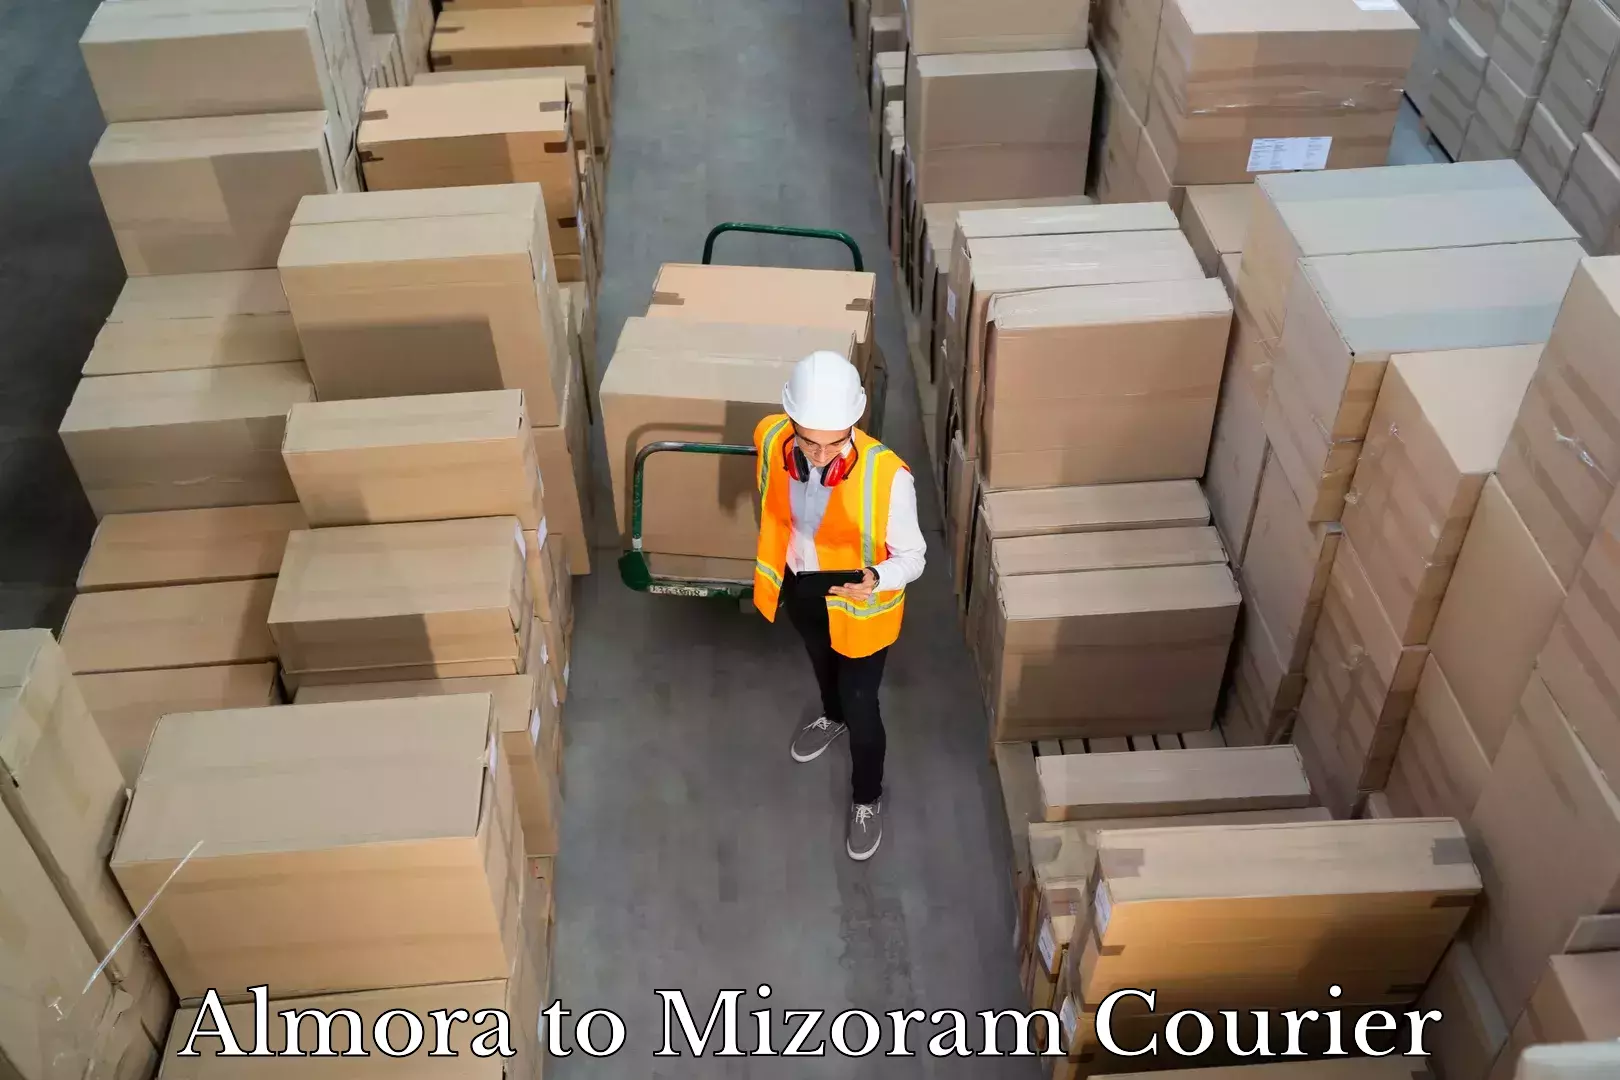 Luggage shipping service Almora to Mizoram